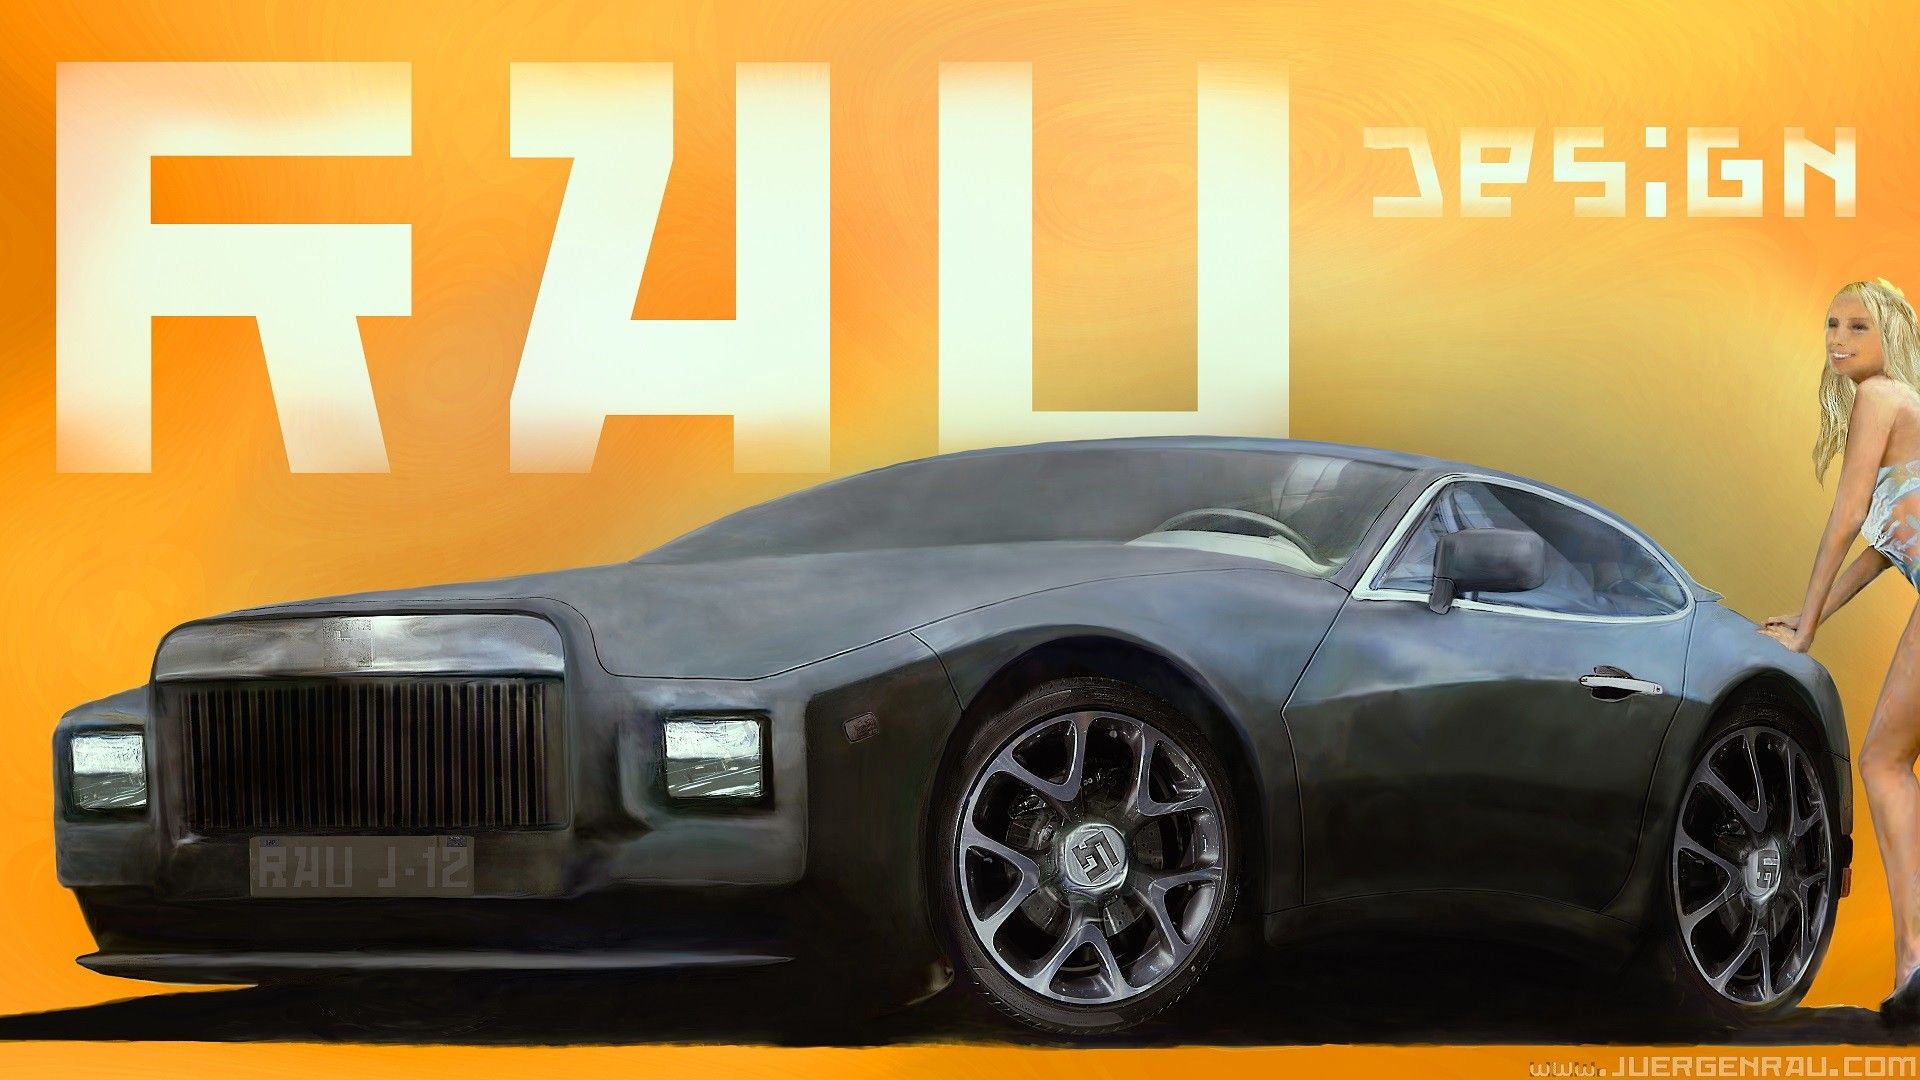 0087.2017.04.28.01. Luxury Concept Car J 12. Full HD Desktop Wallpaper., Juergen RAU